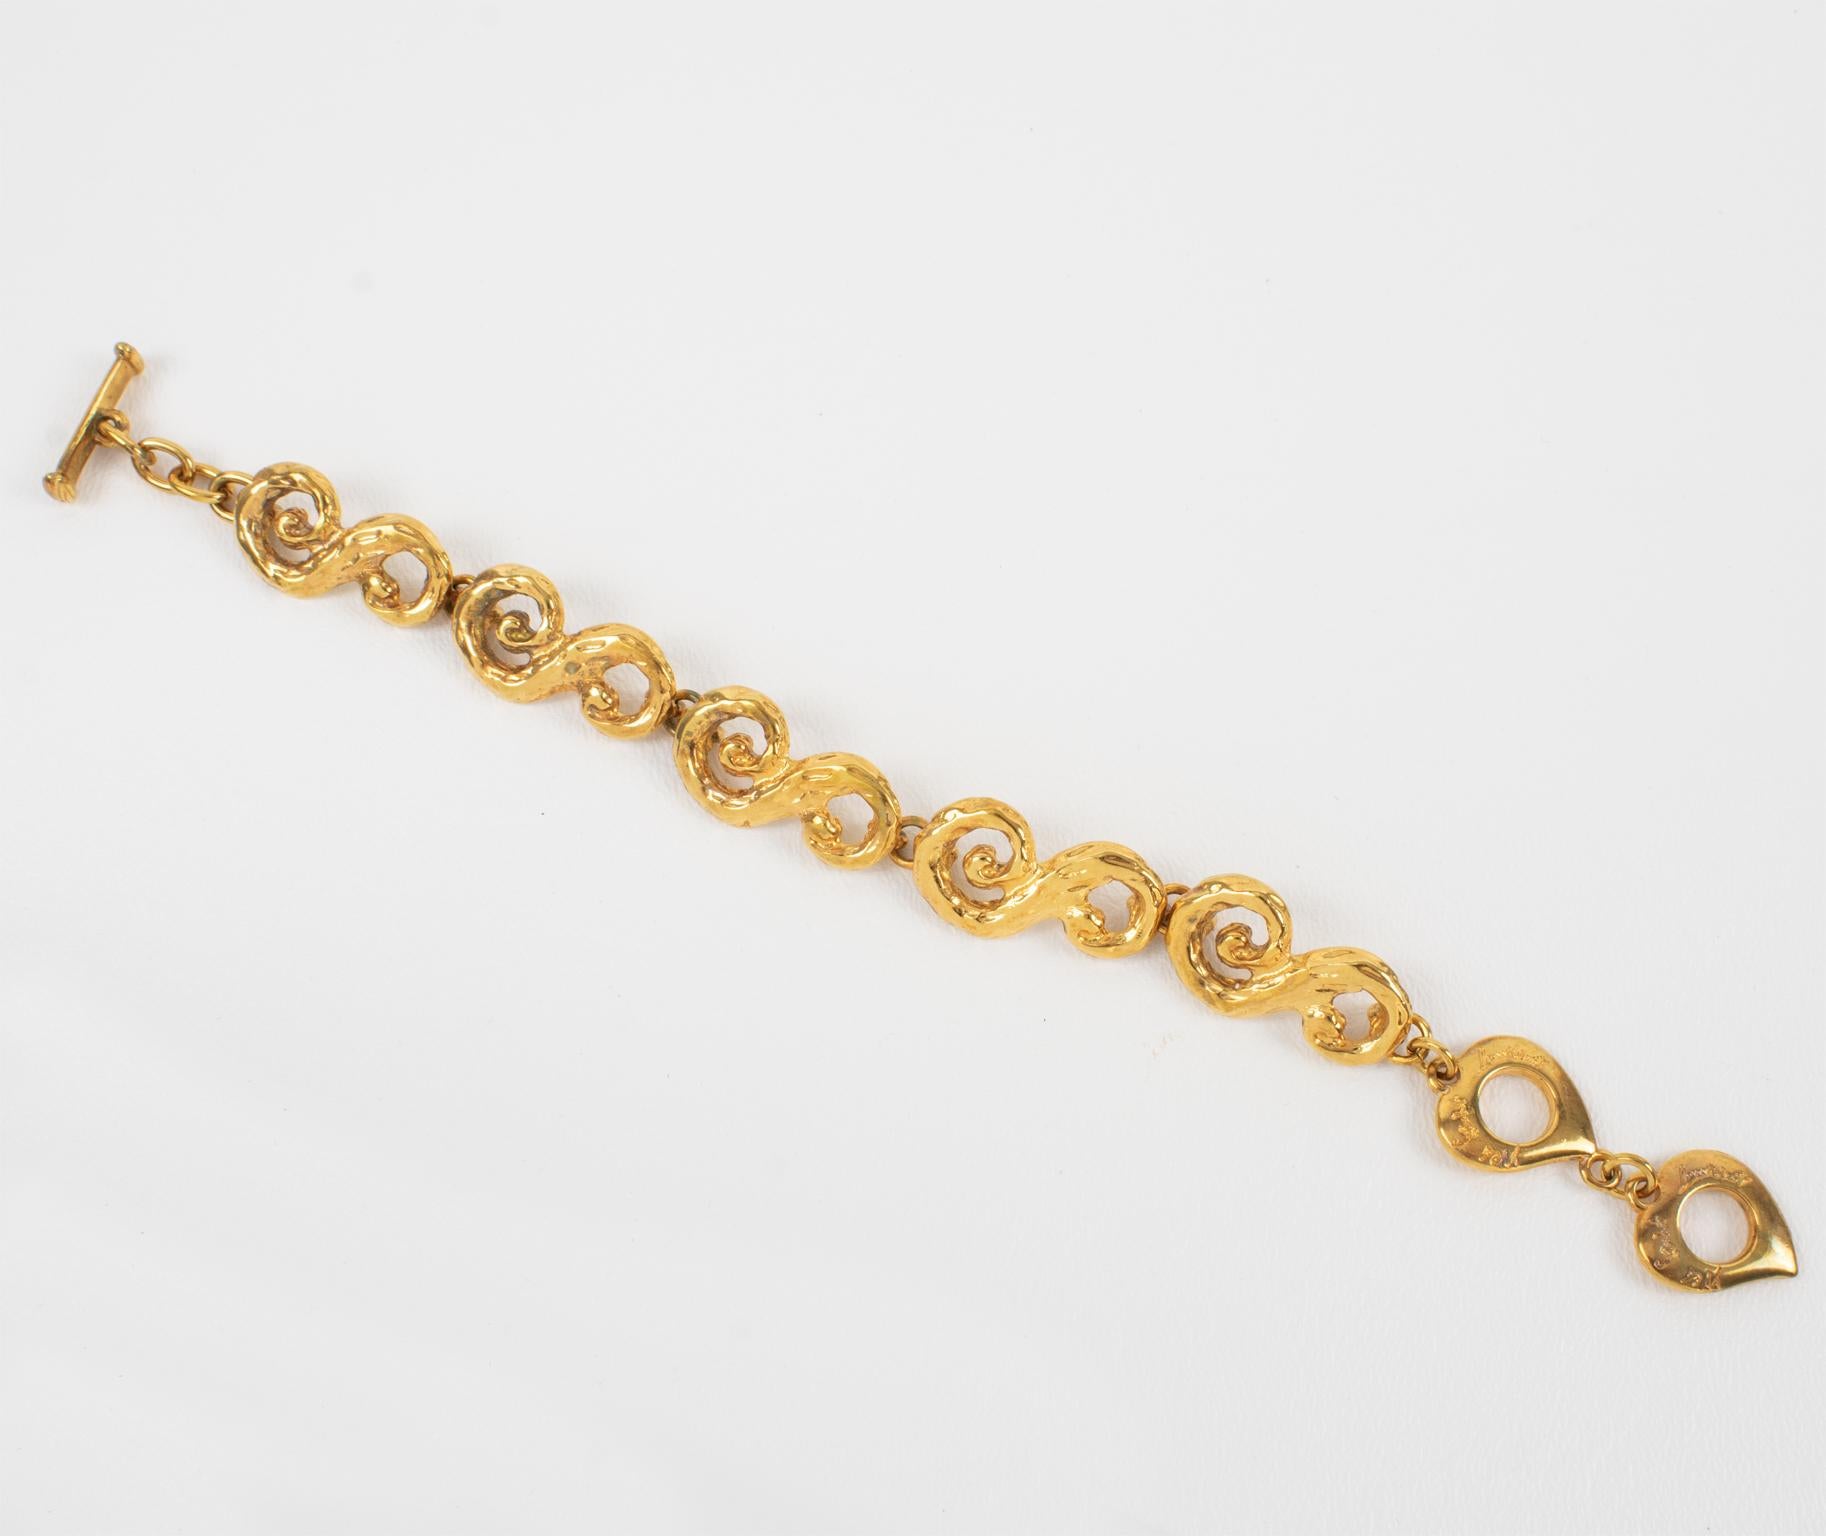 This elegant Yves Saint Laurent YSL Paris link bracelet features stylized 